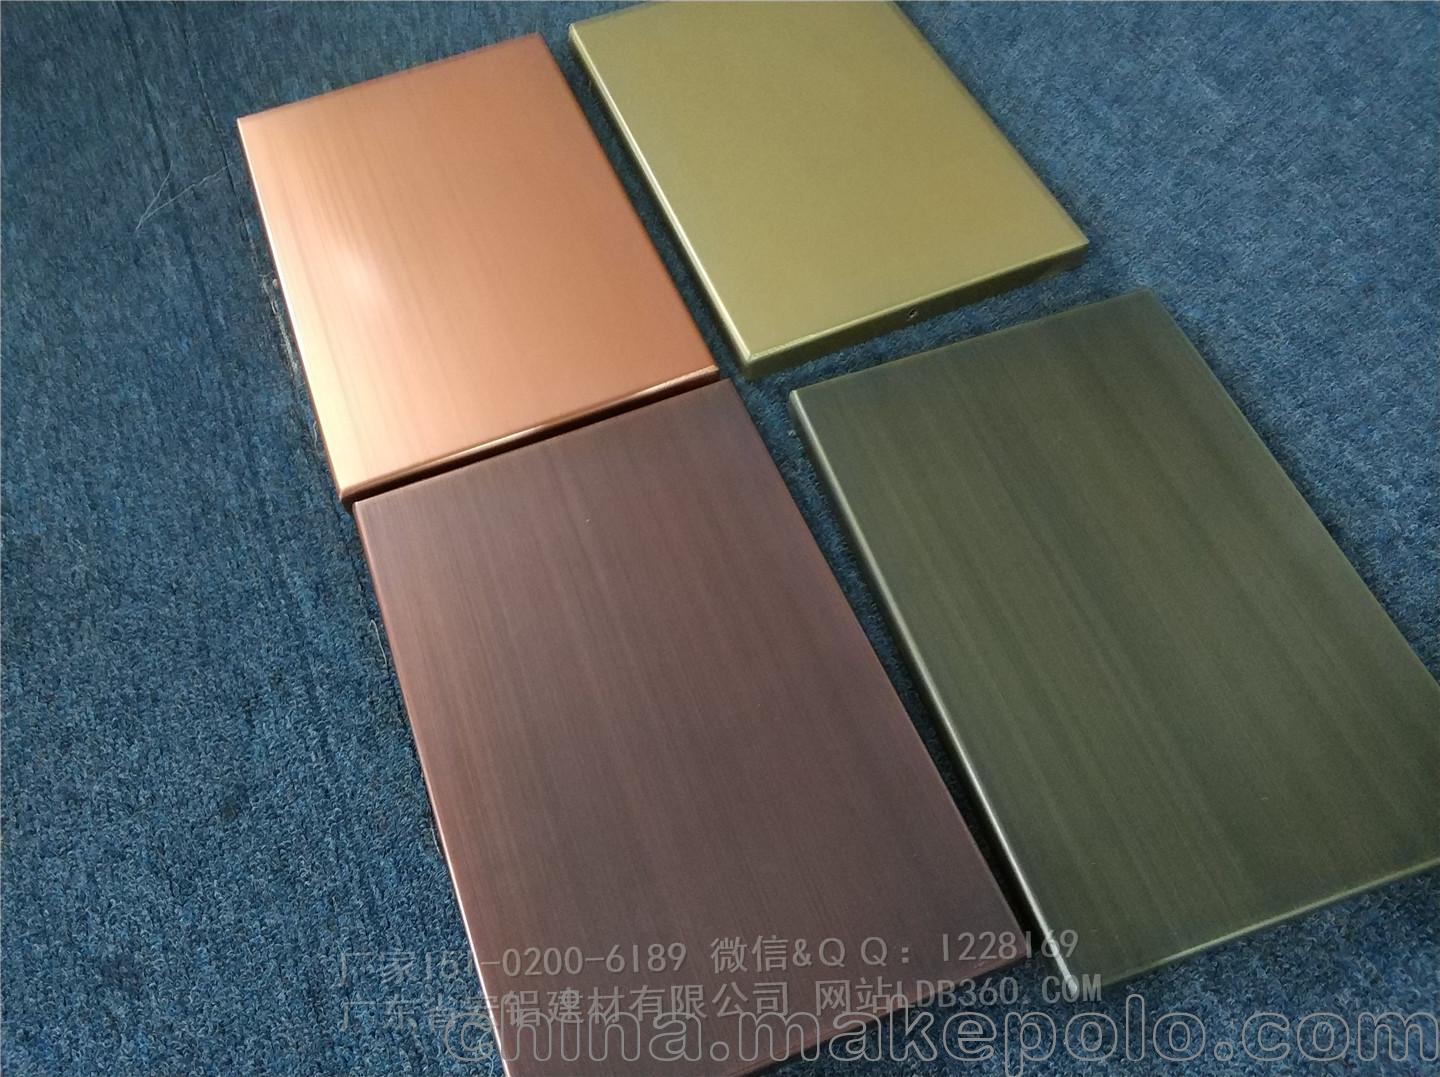 古铜色拉丝铝单板幕板材料-「铝合金外墙板」-马可波罗网